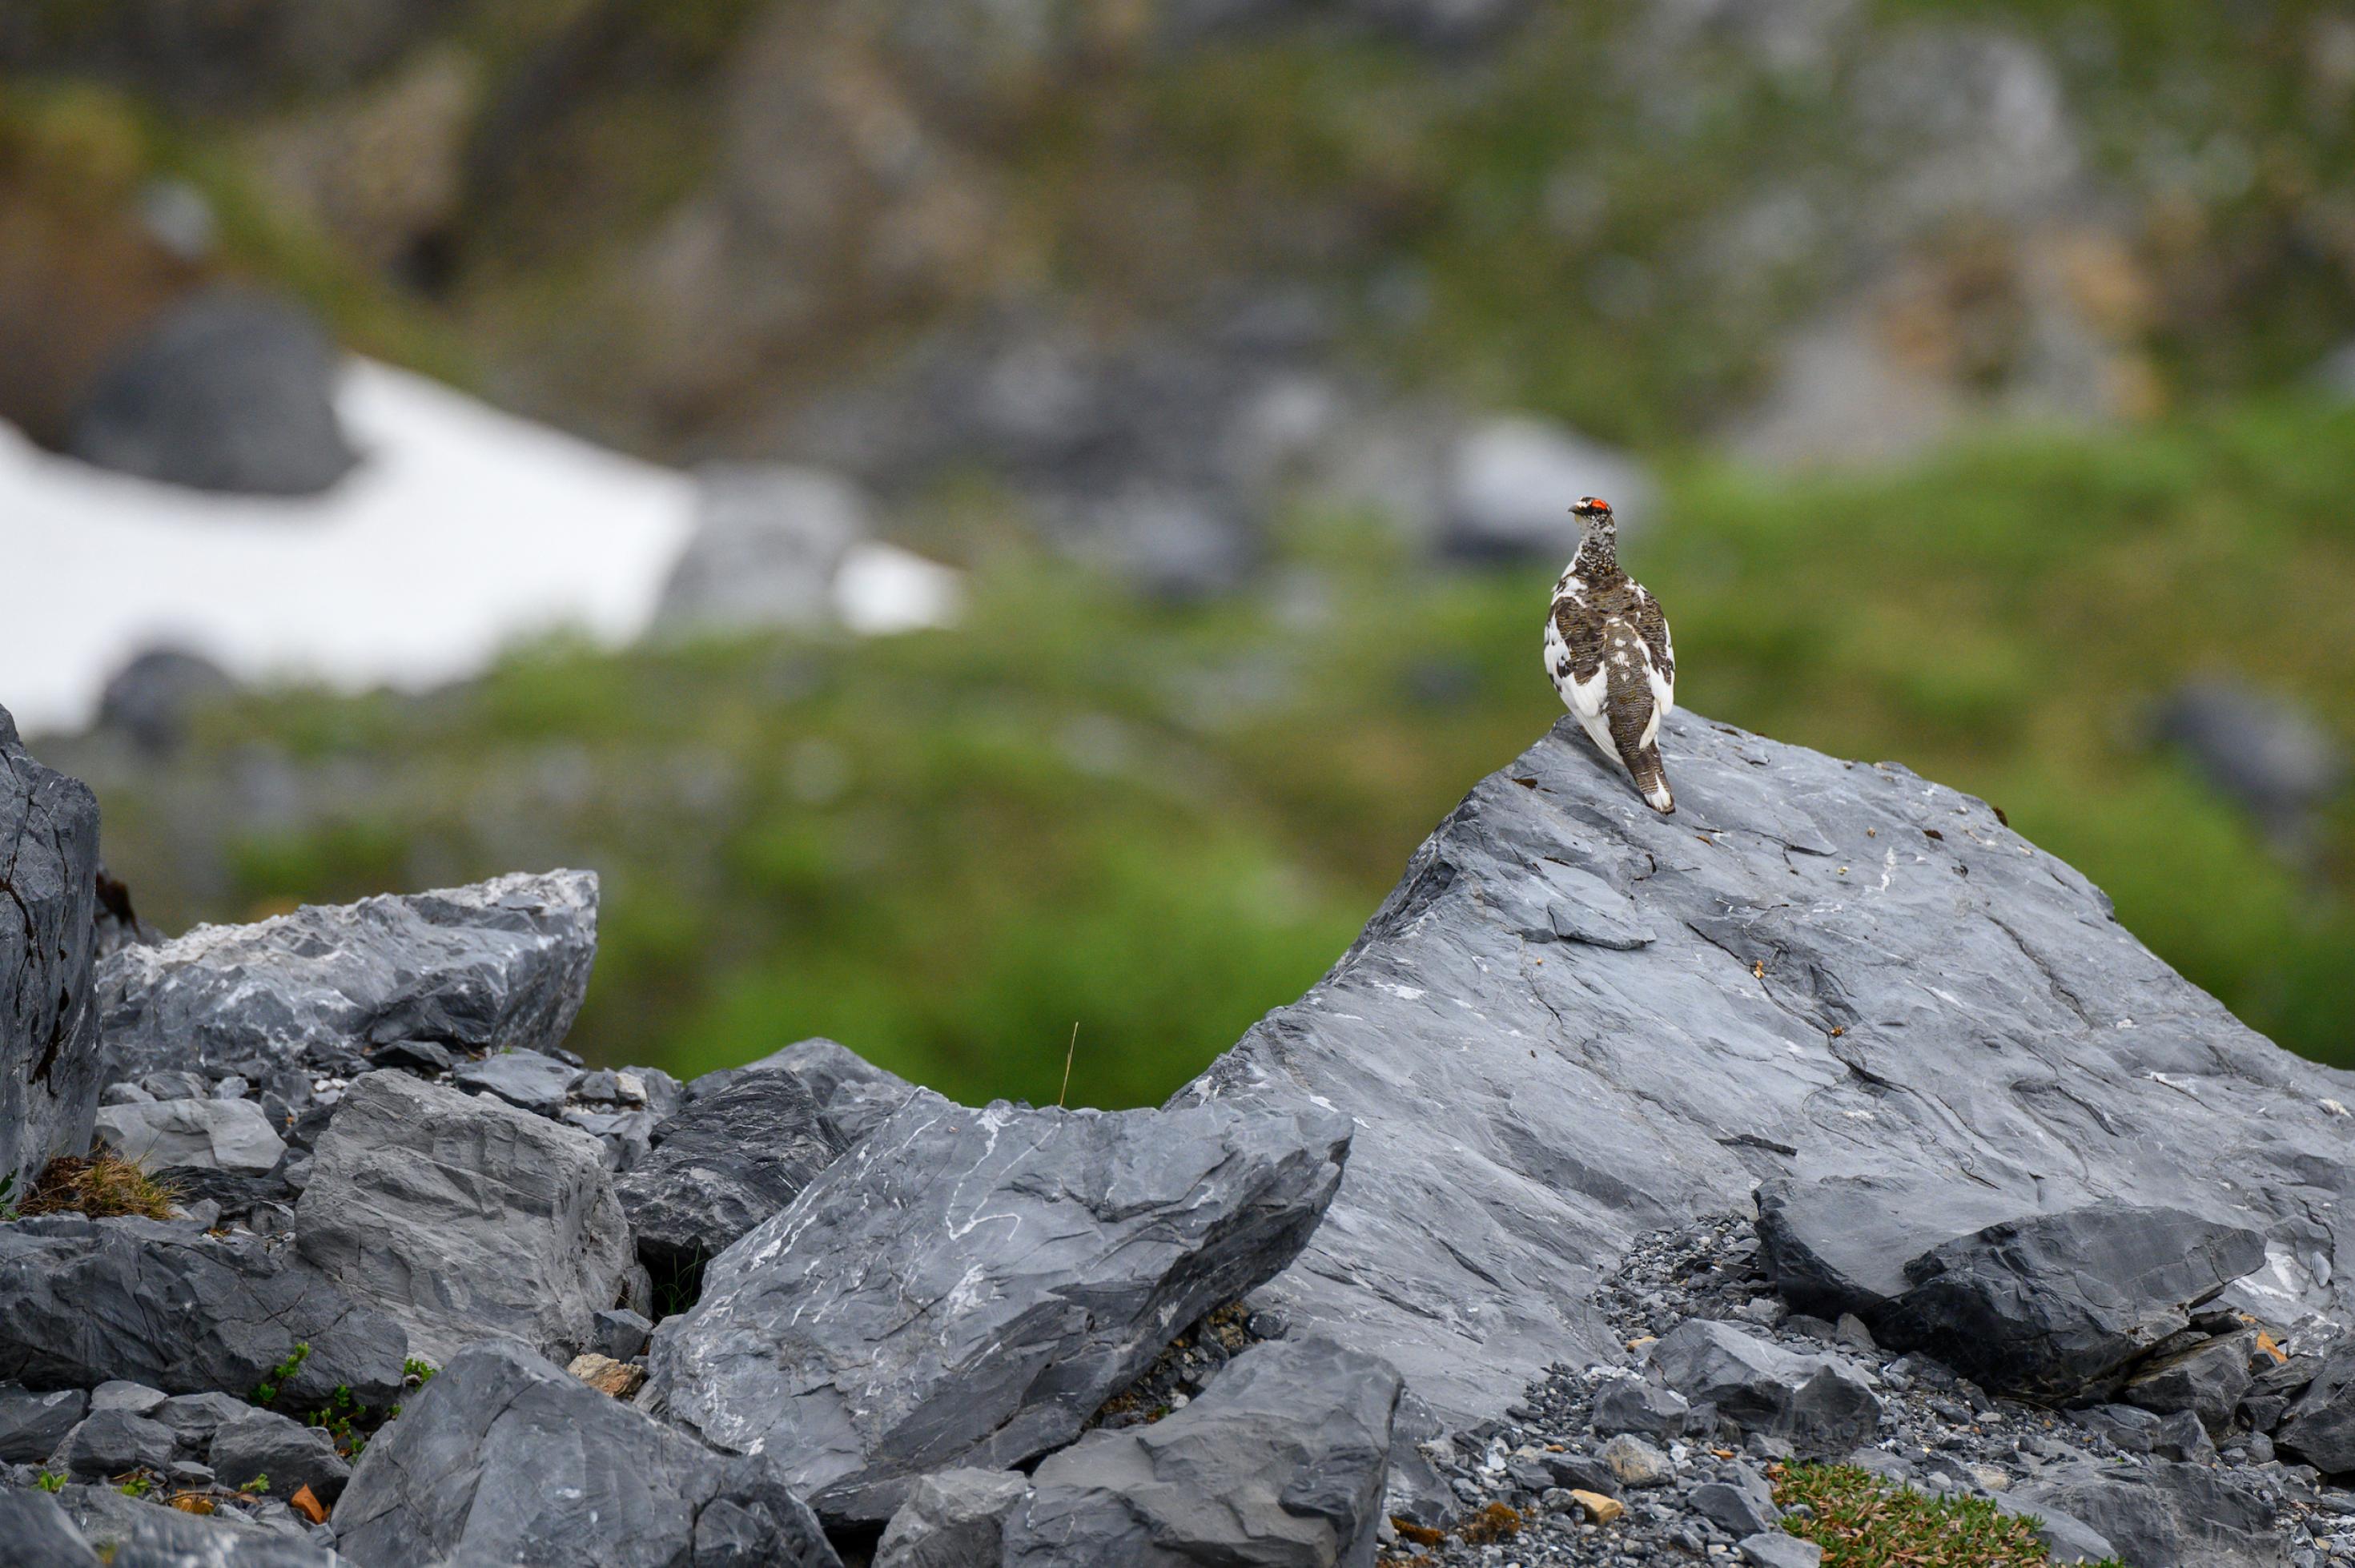 Braun-weißer Vogel sitzt auf Felsen vor Schneebrett in grüner Landschaft.